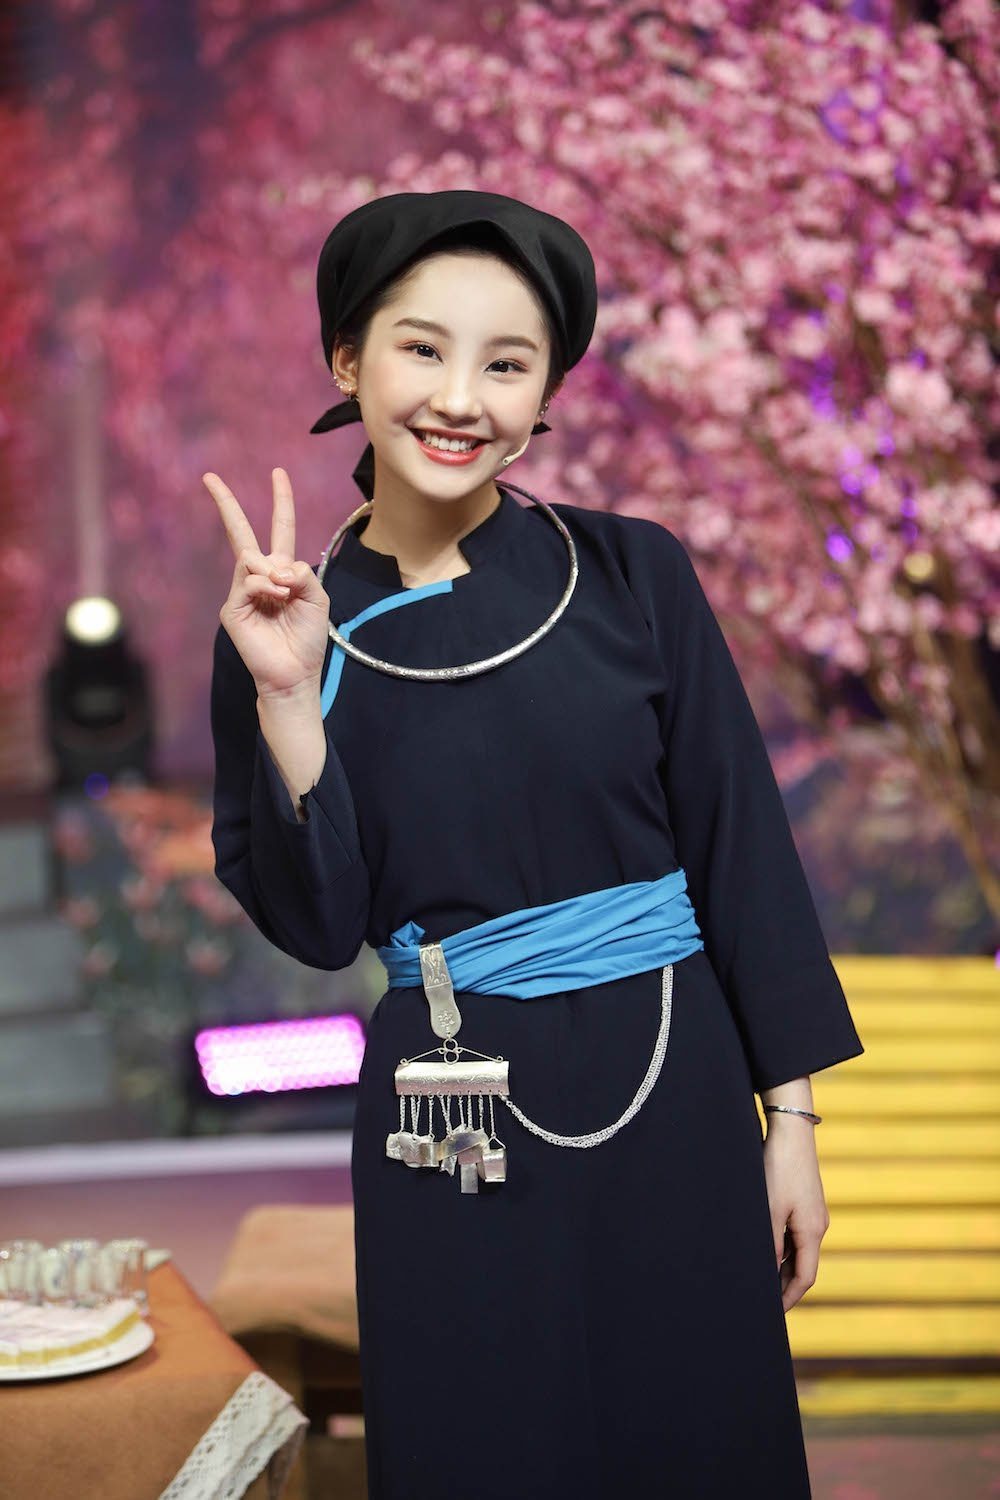 Cô gái người Tày với trang phục dân tộc tuyệt đẹp, đem đến cho ta cảm giác thanh lịch, sang trọng và đầy tự tin. Hãy cùng chiêm ngưỡng vẻ đẹp của nền văn hóa Việt Nam.